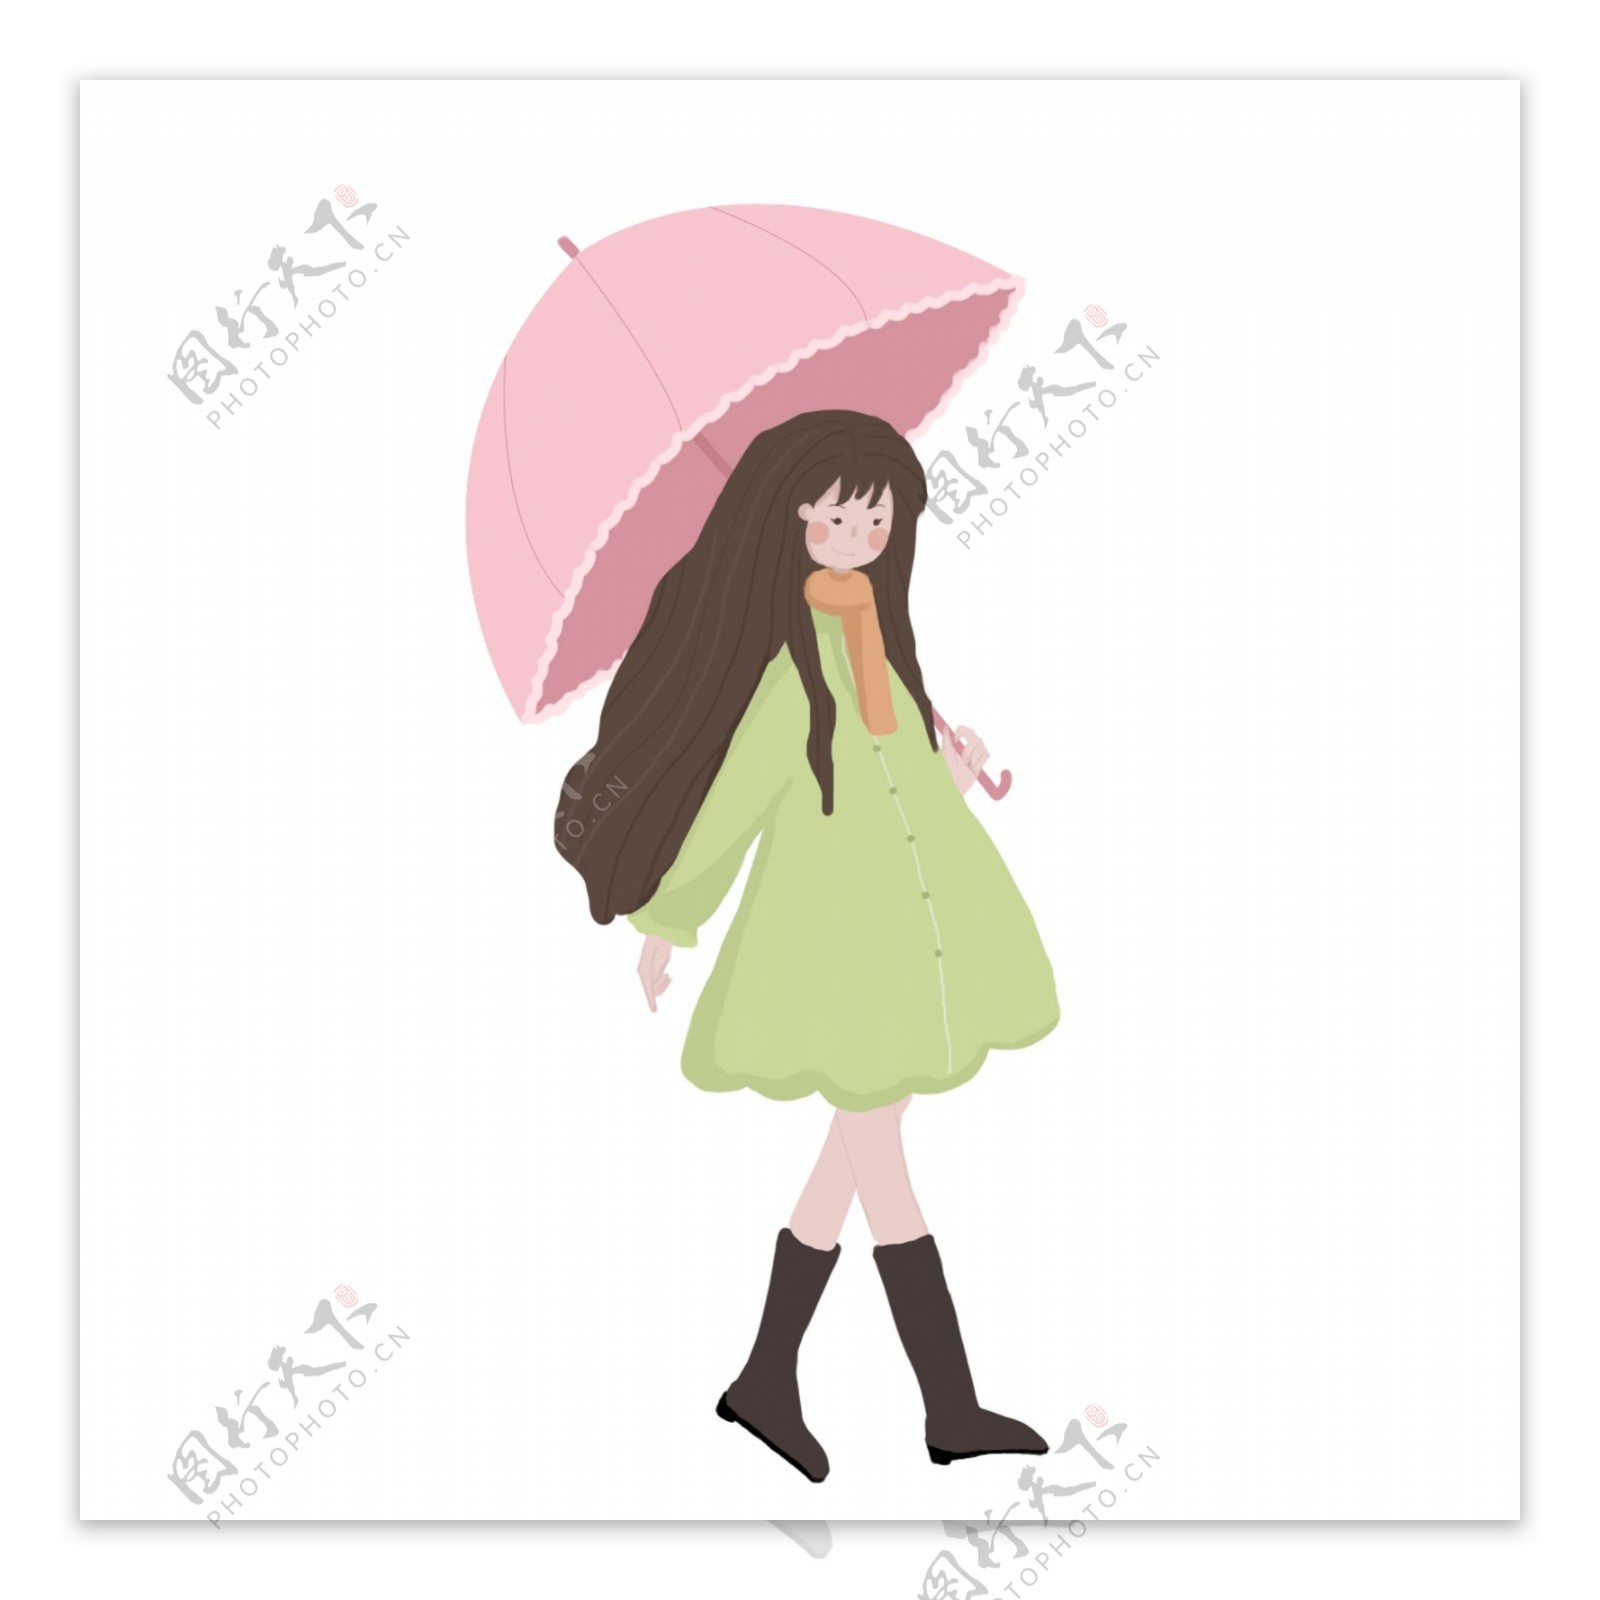 文艺女孩打着伞散步原创元素